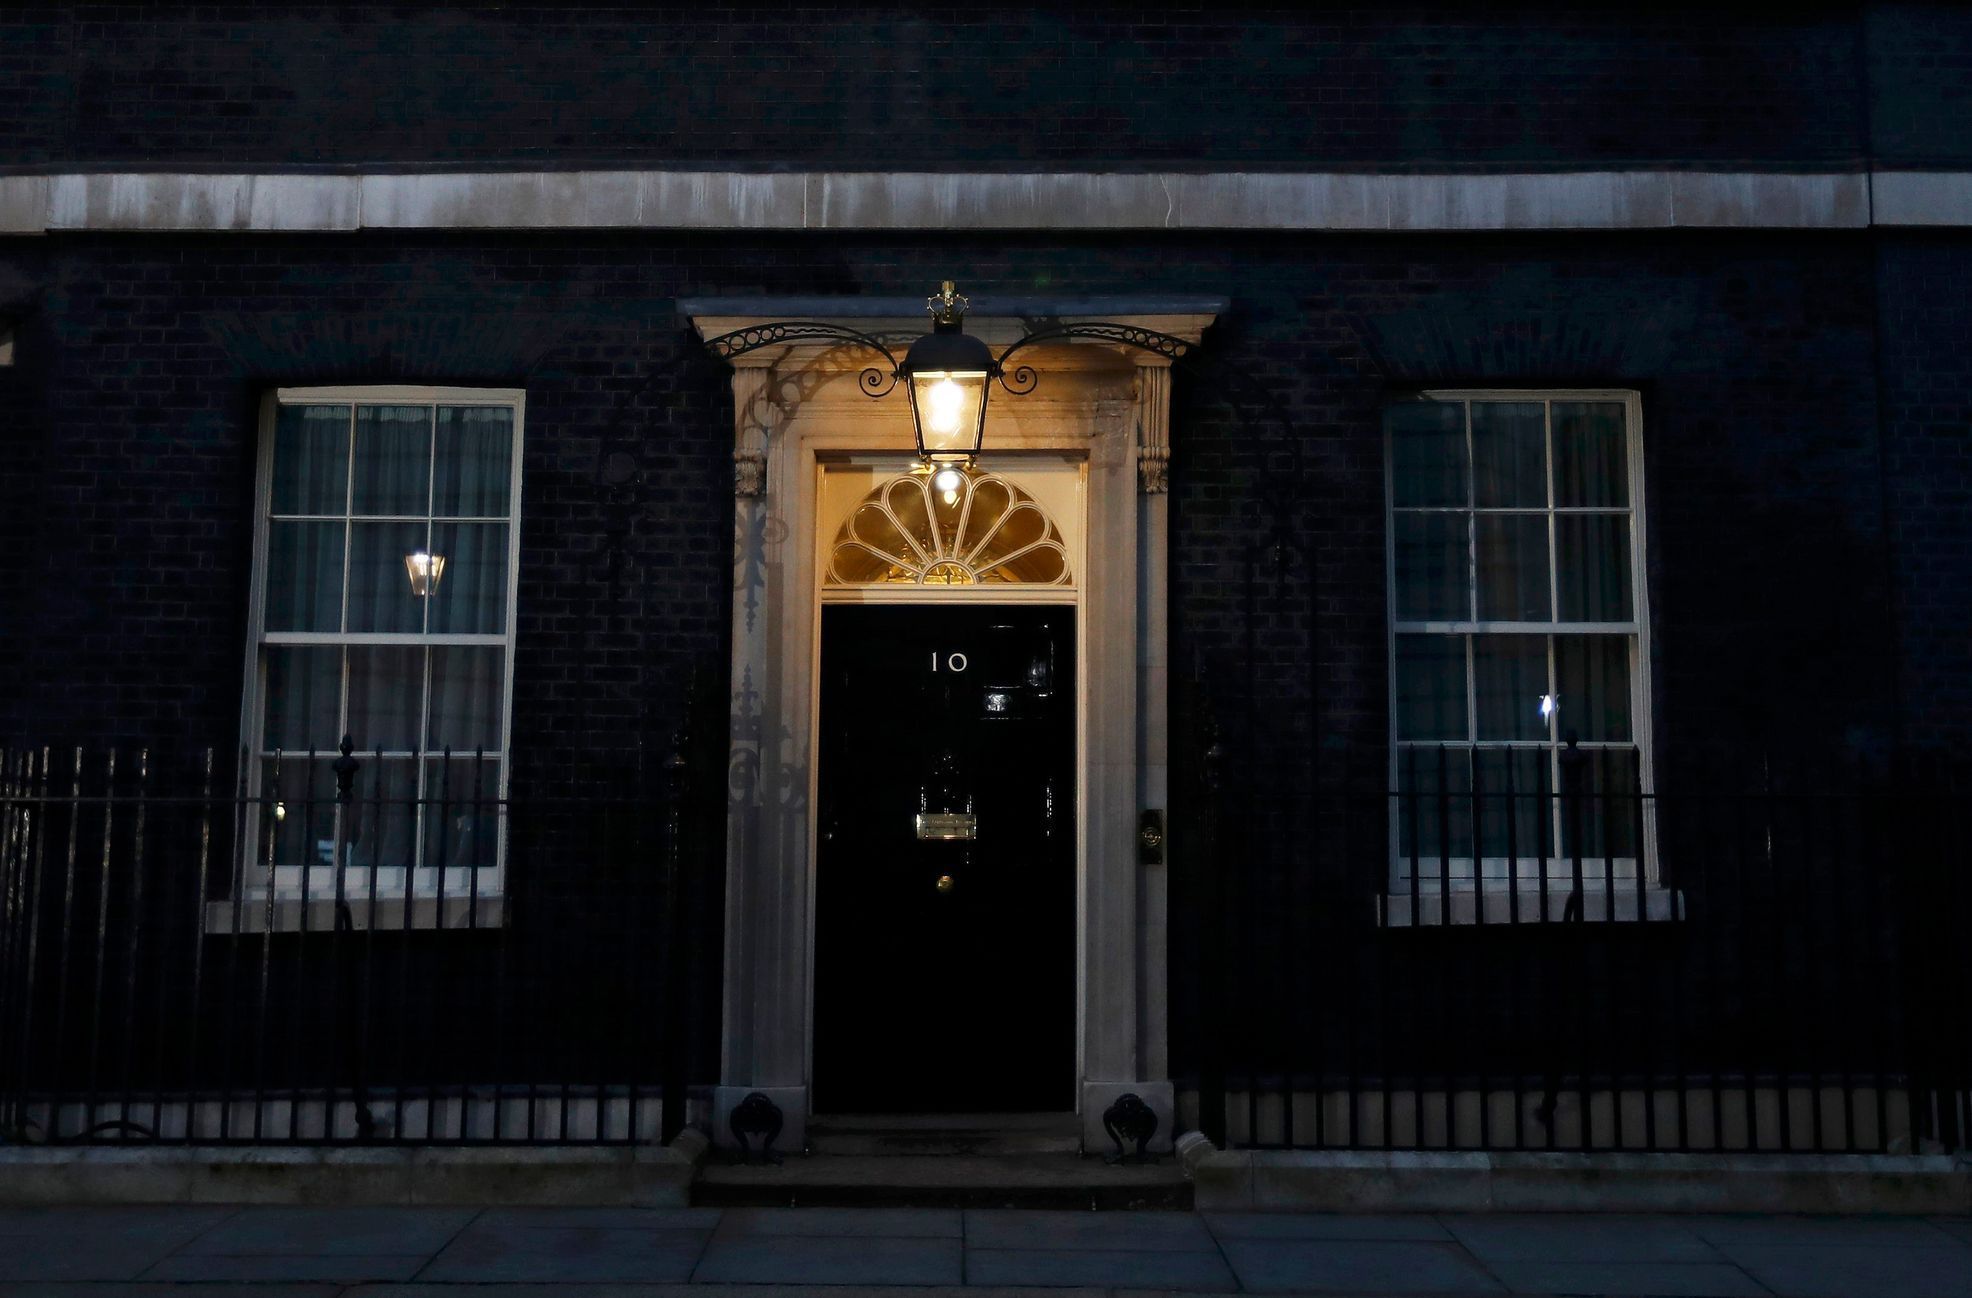 Byt britského premiéra, 10 Downing Street